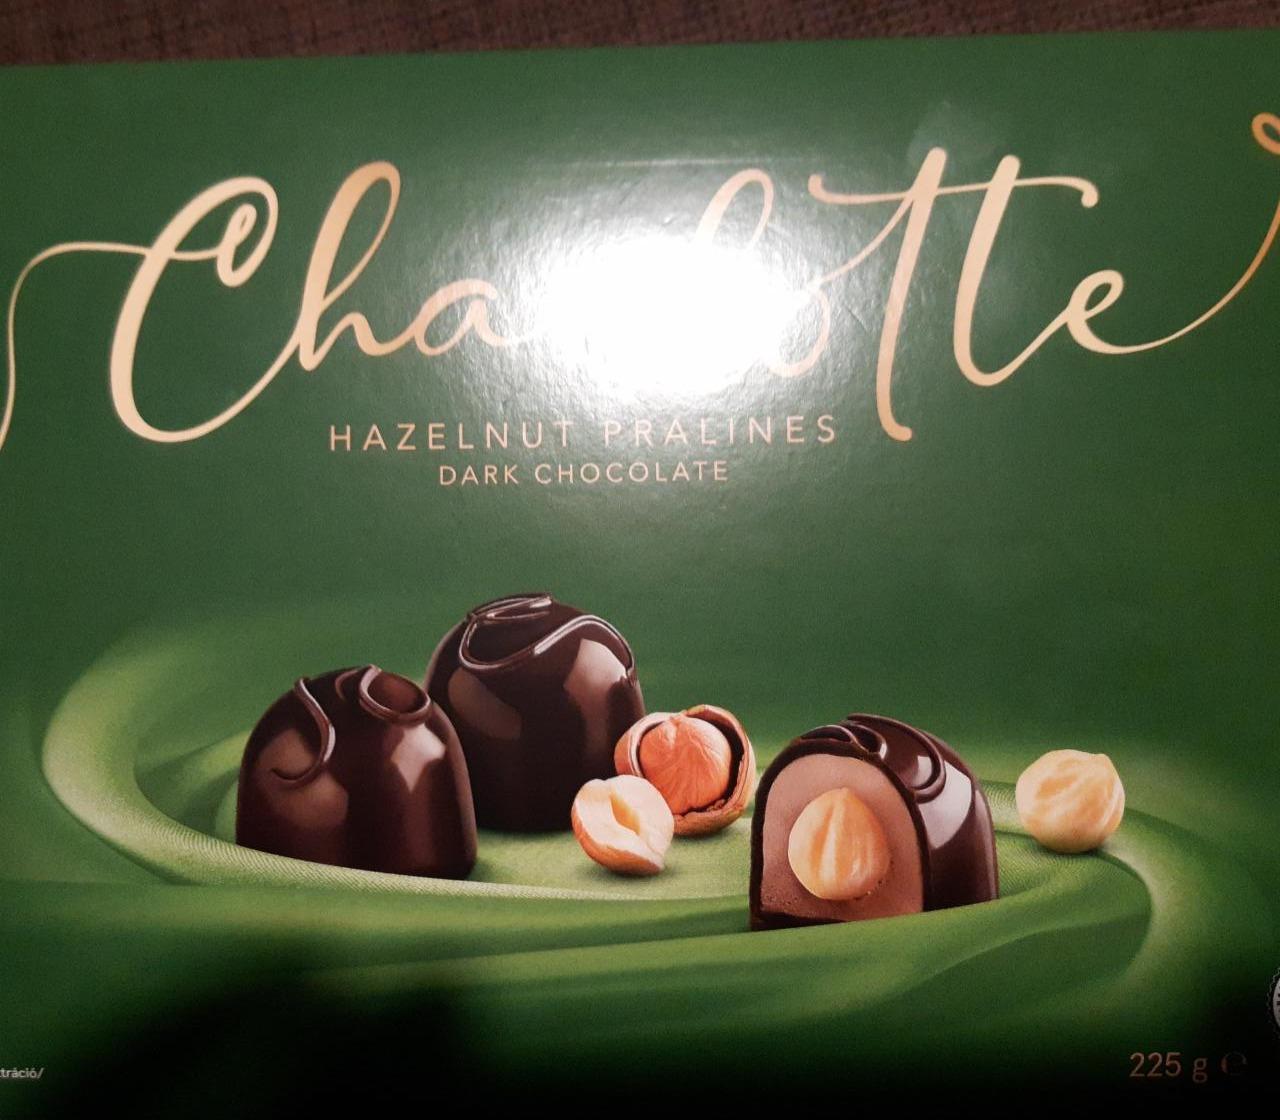 Fotografie - Hazelnuts Pralines Dark Chocolate Charlotte